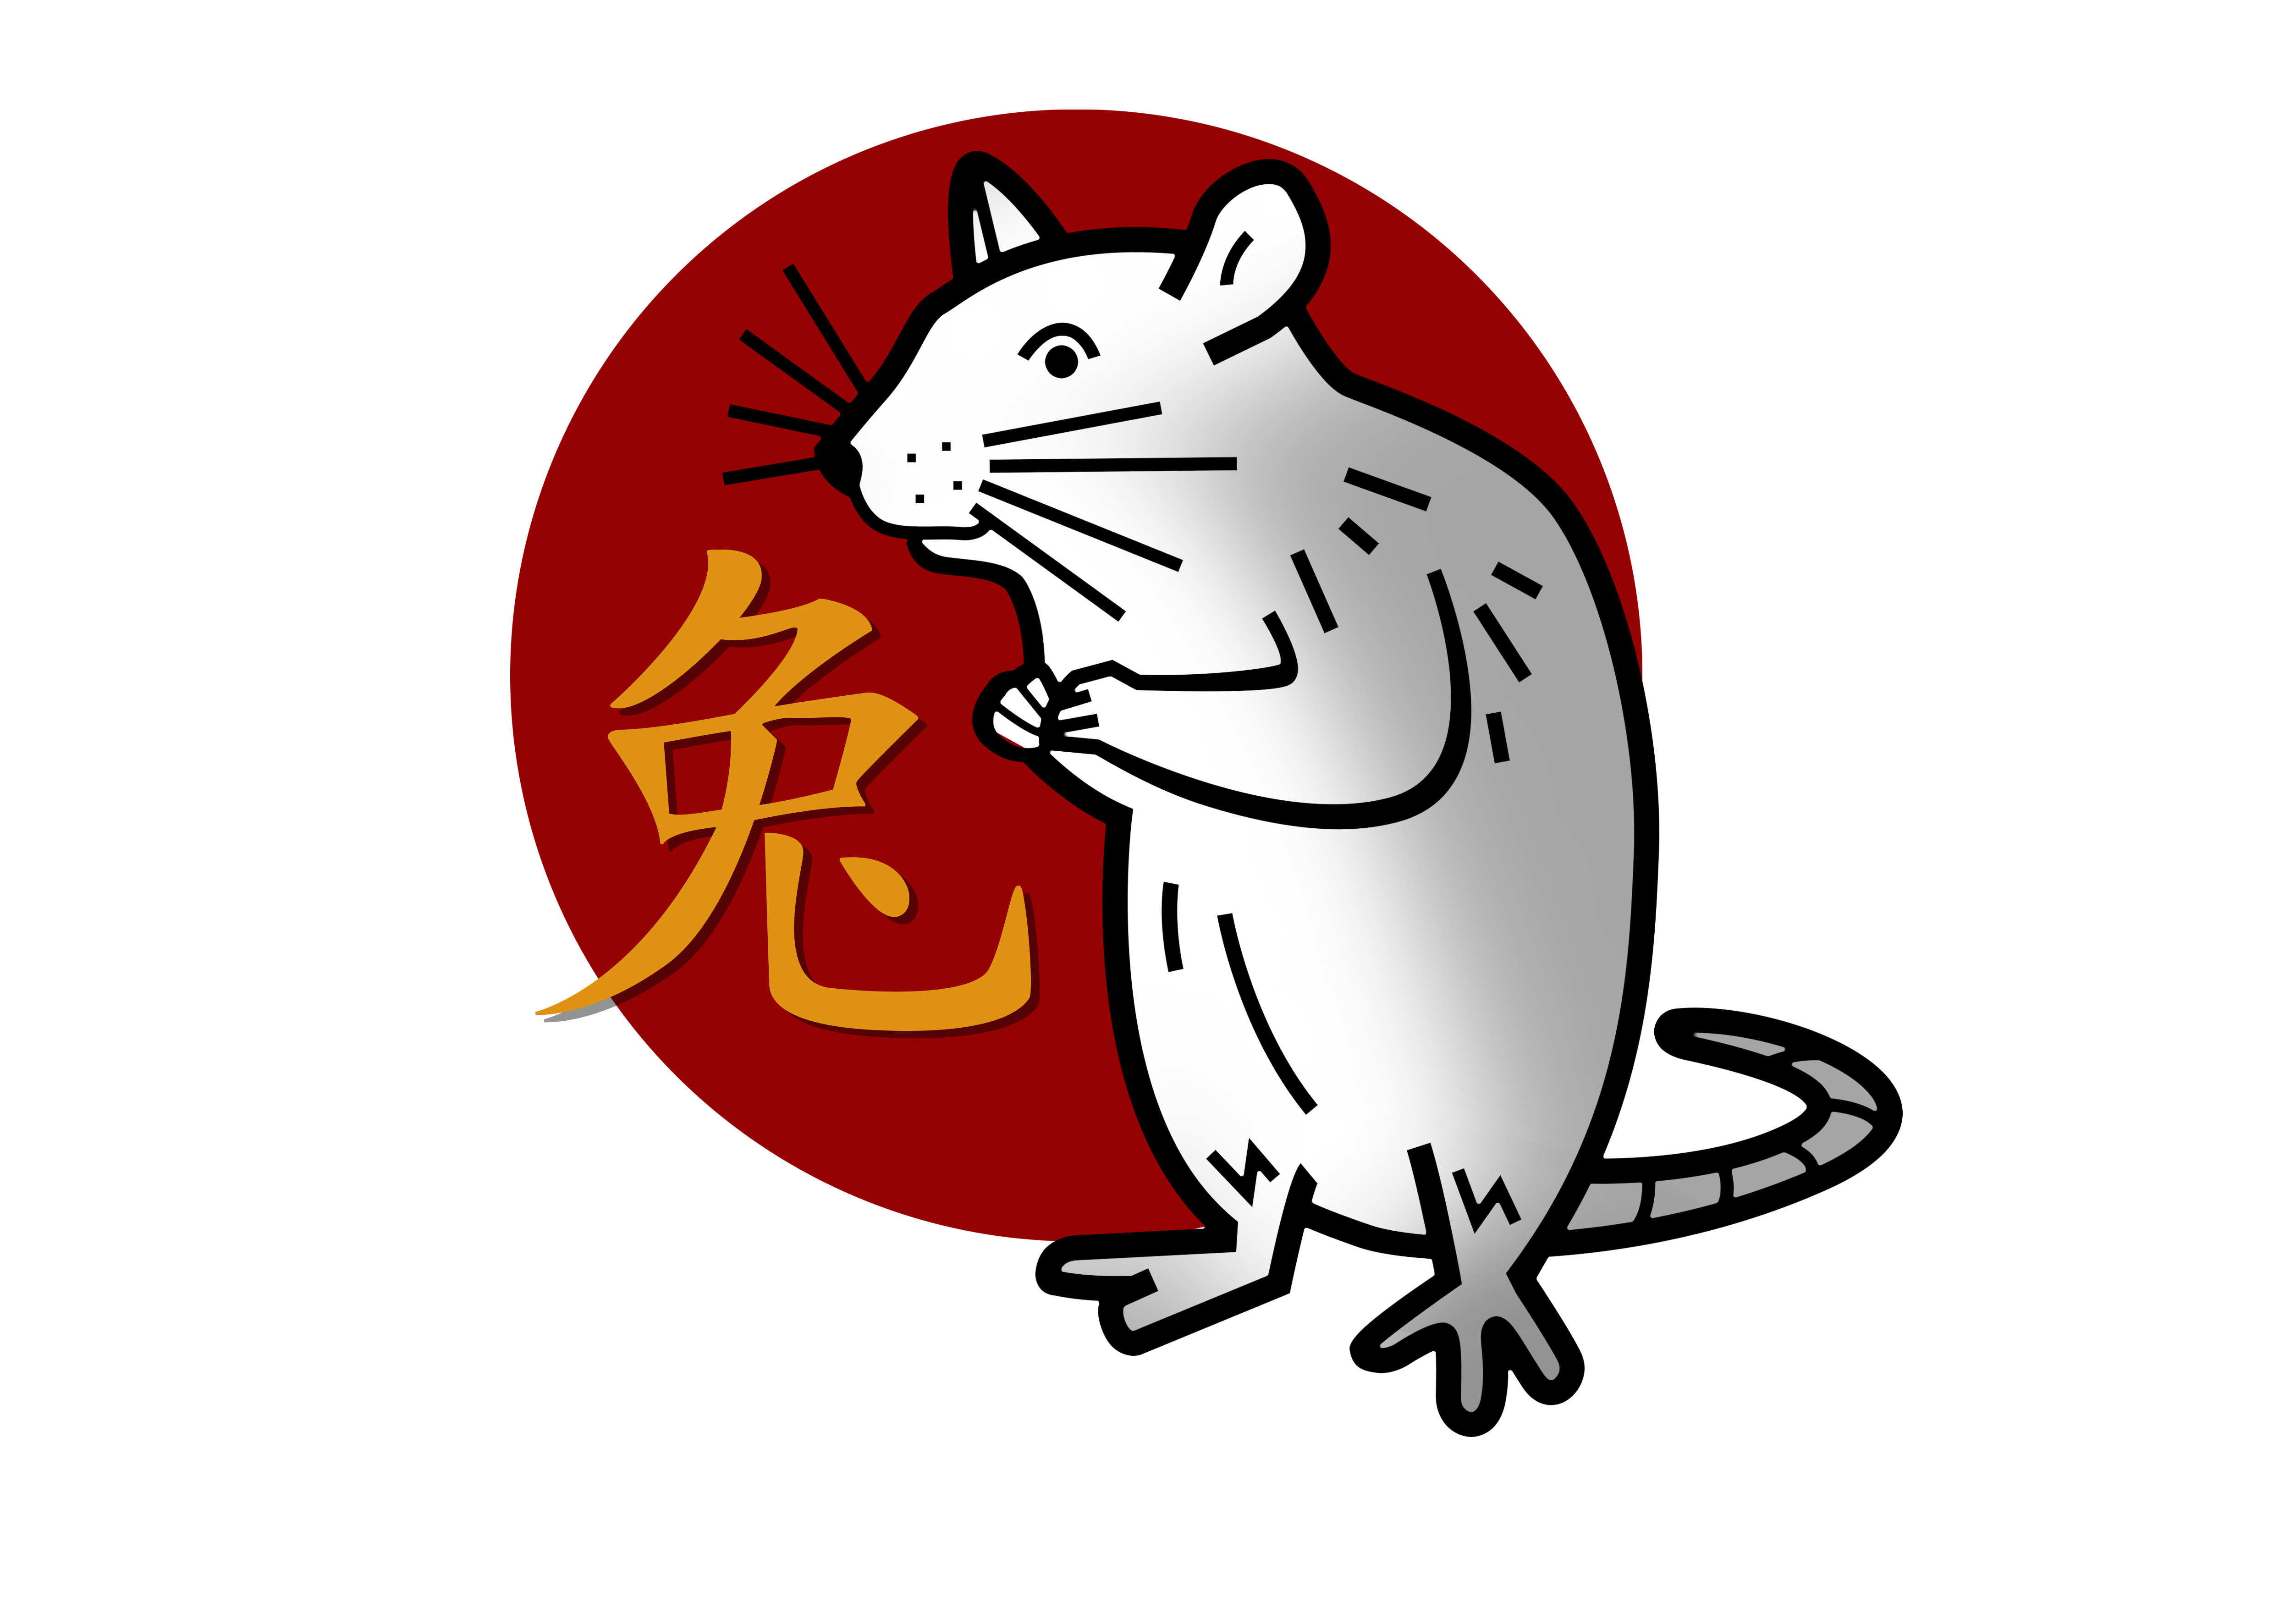 Kínai horoszkóp-előrejelzés szeptemberre a Patkányoknak: szerelmi kalandra,  főnöki számonkérésre, sorsdöntő tárgyalásra van kilátásod - kiskegyed.hu